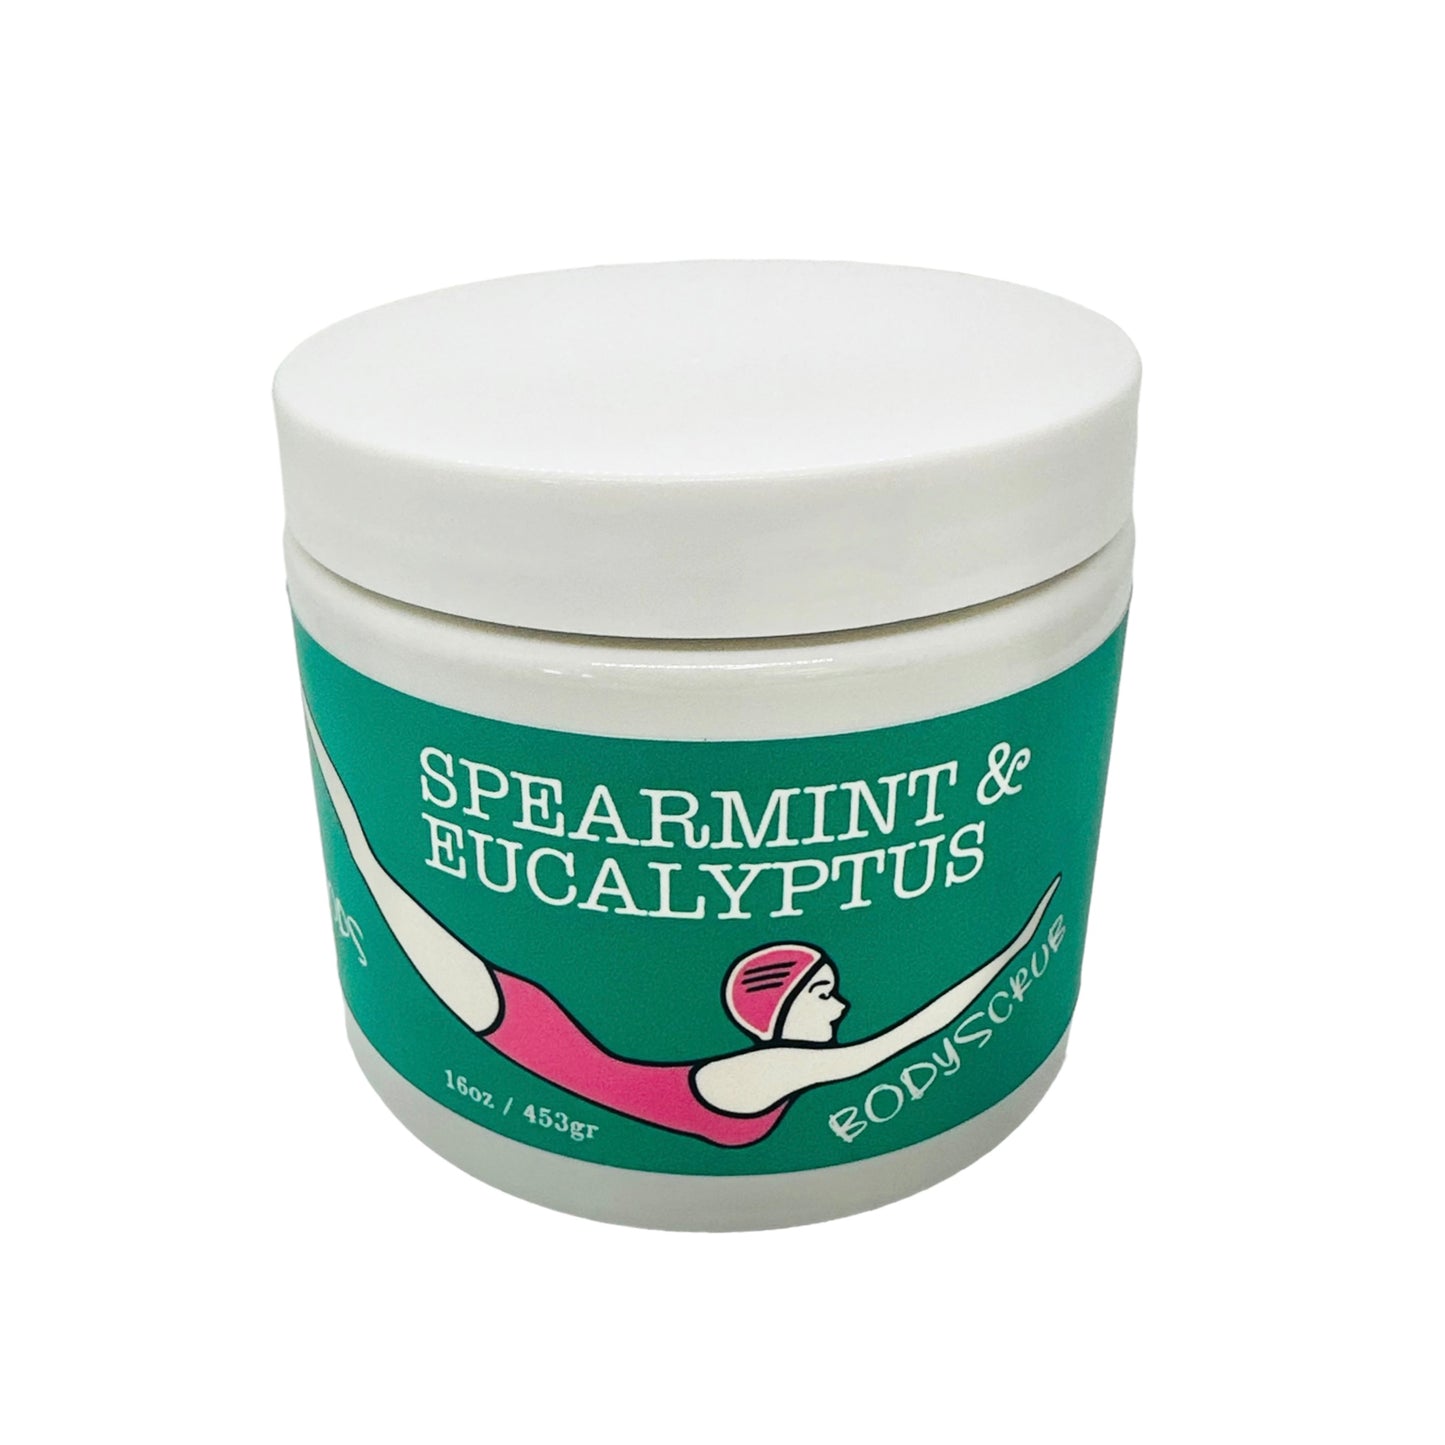 Spearmint & Eucalyptus Body scrub